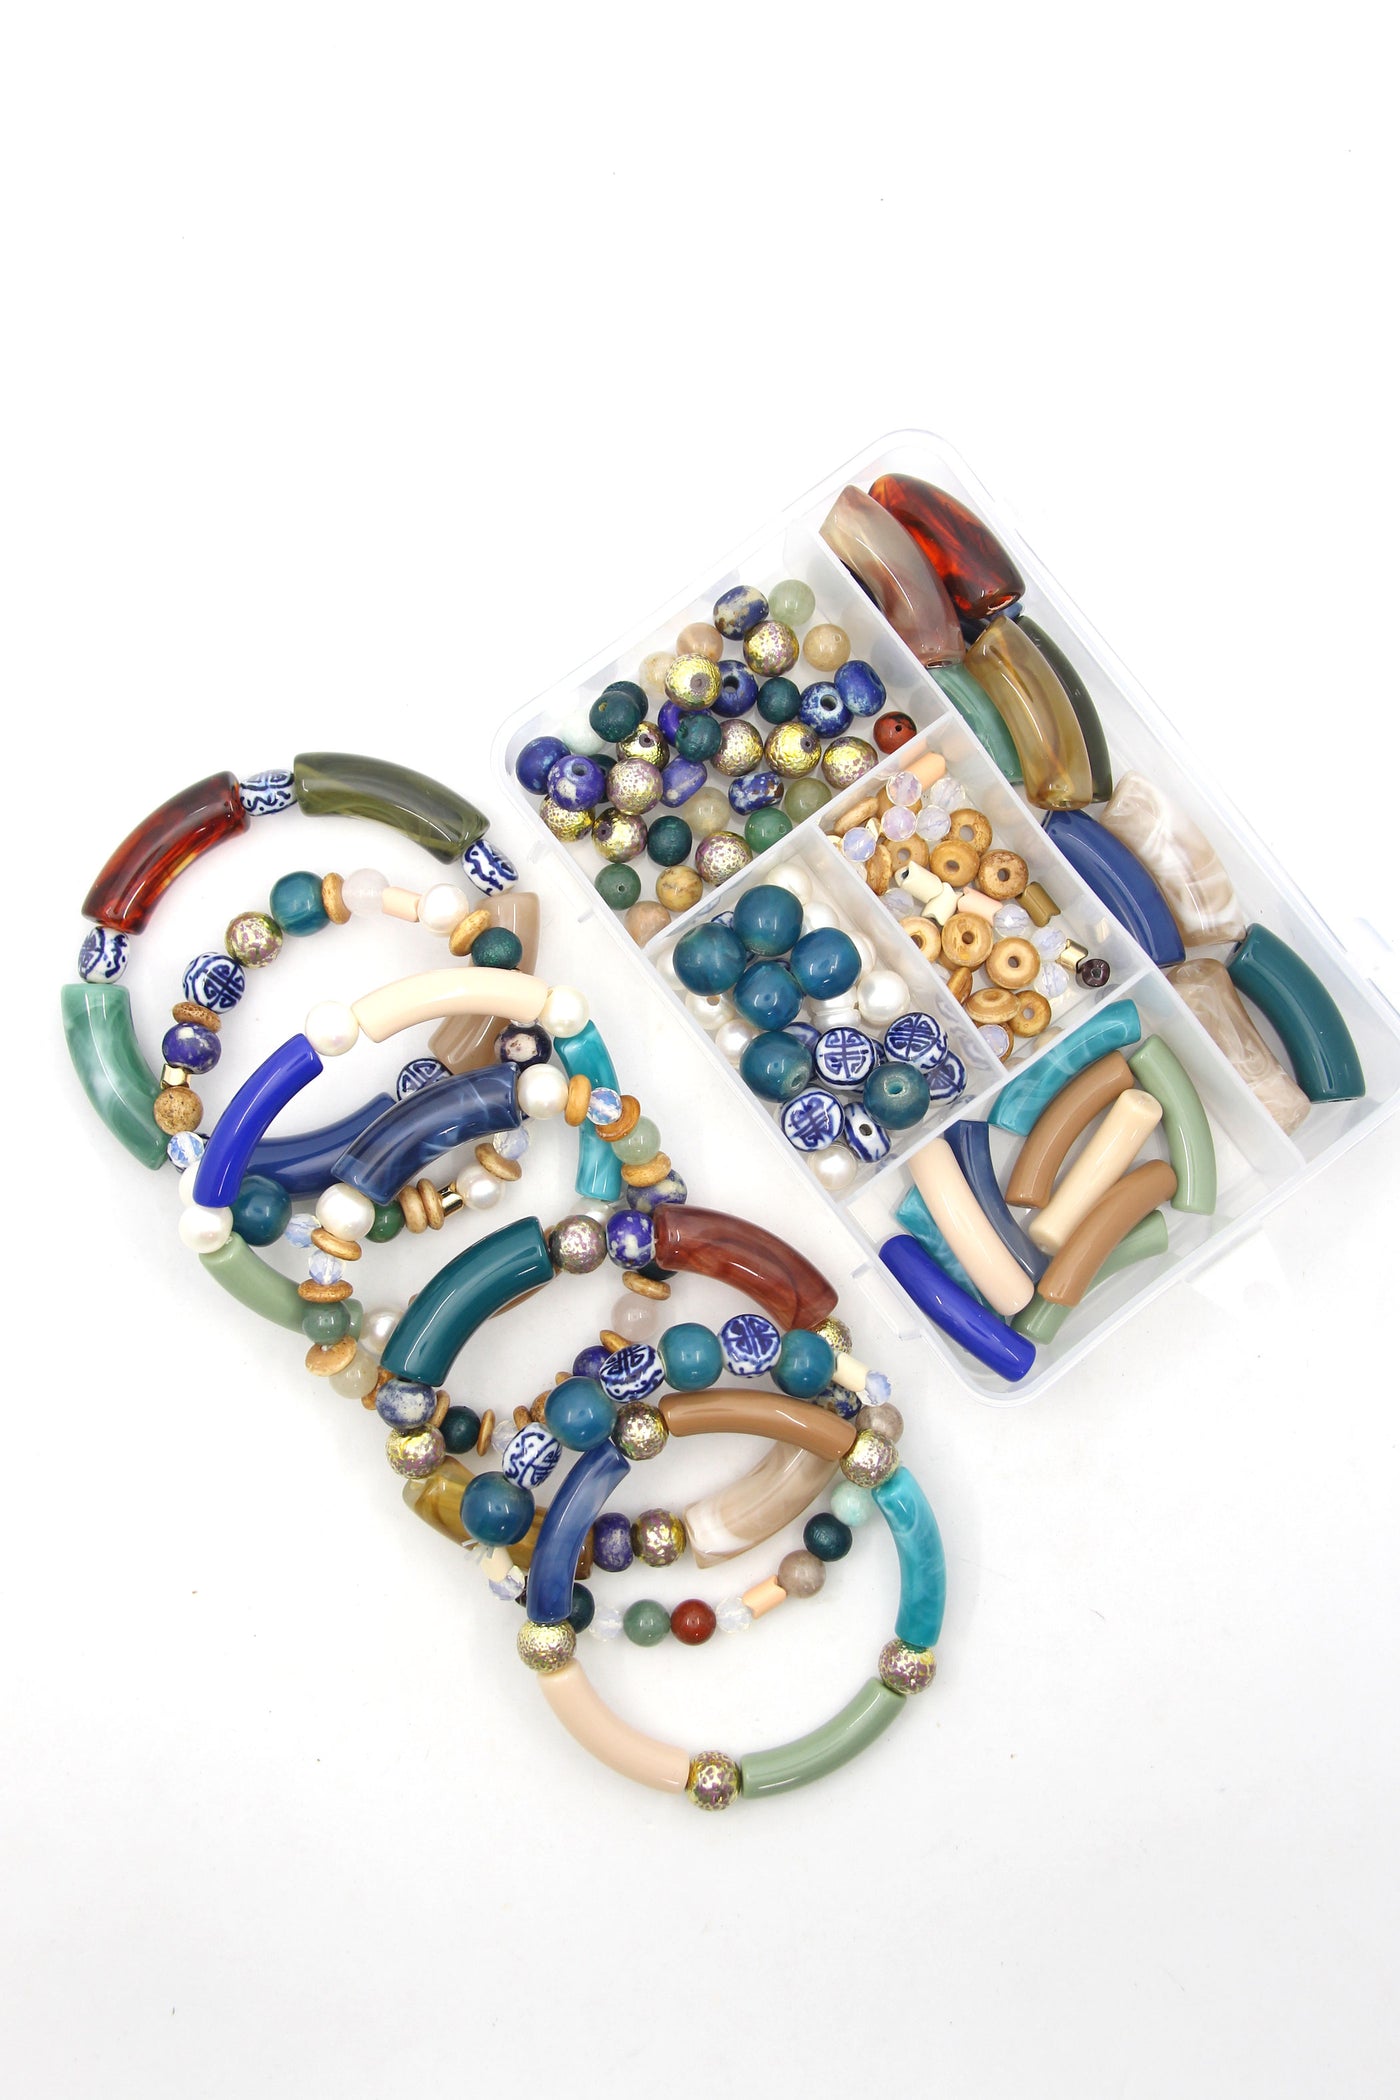 Blue, Green, & Neutral Beads - DIY Bracelet Kit